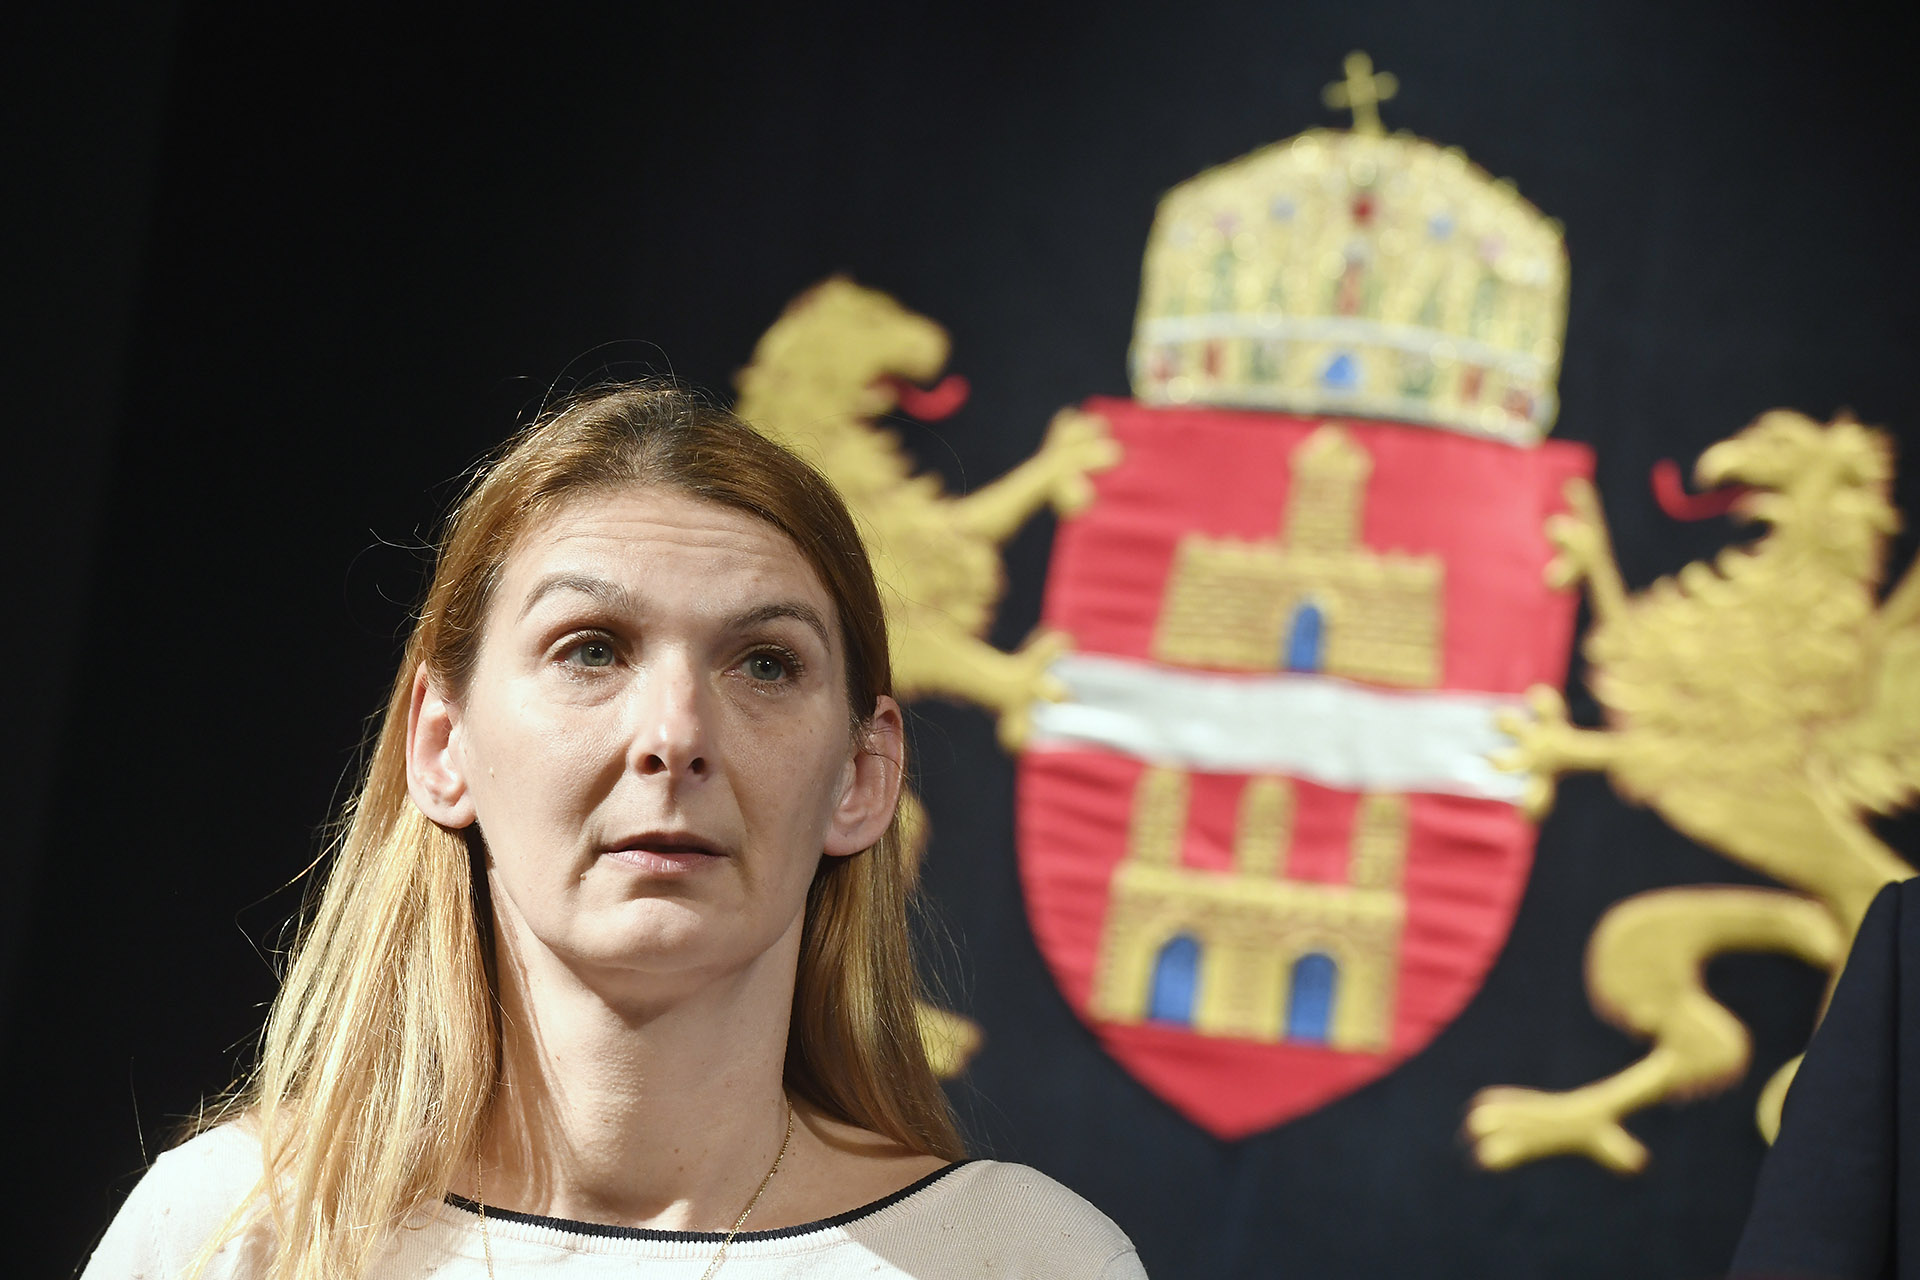  Baranyi Krisztina reagált az ellenzéki képviselők vádjaira